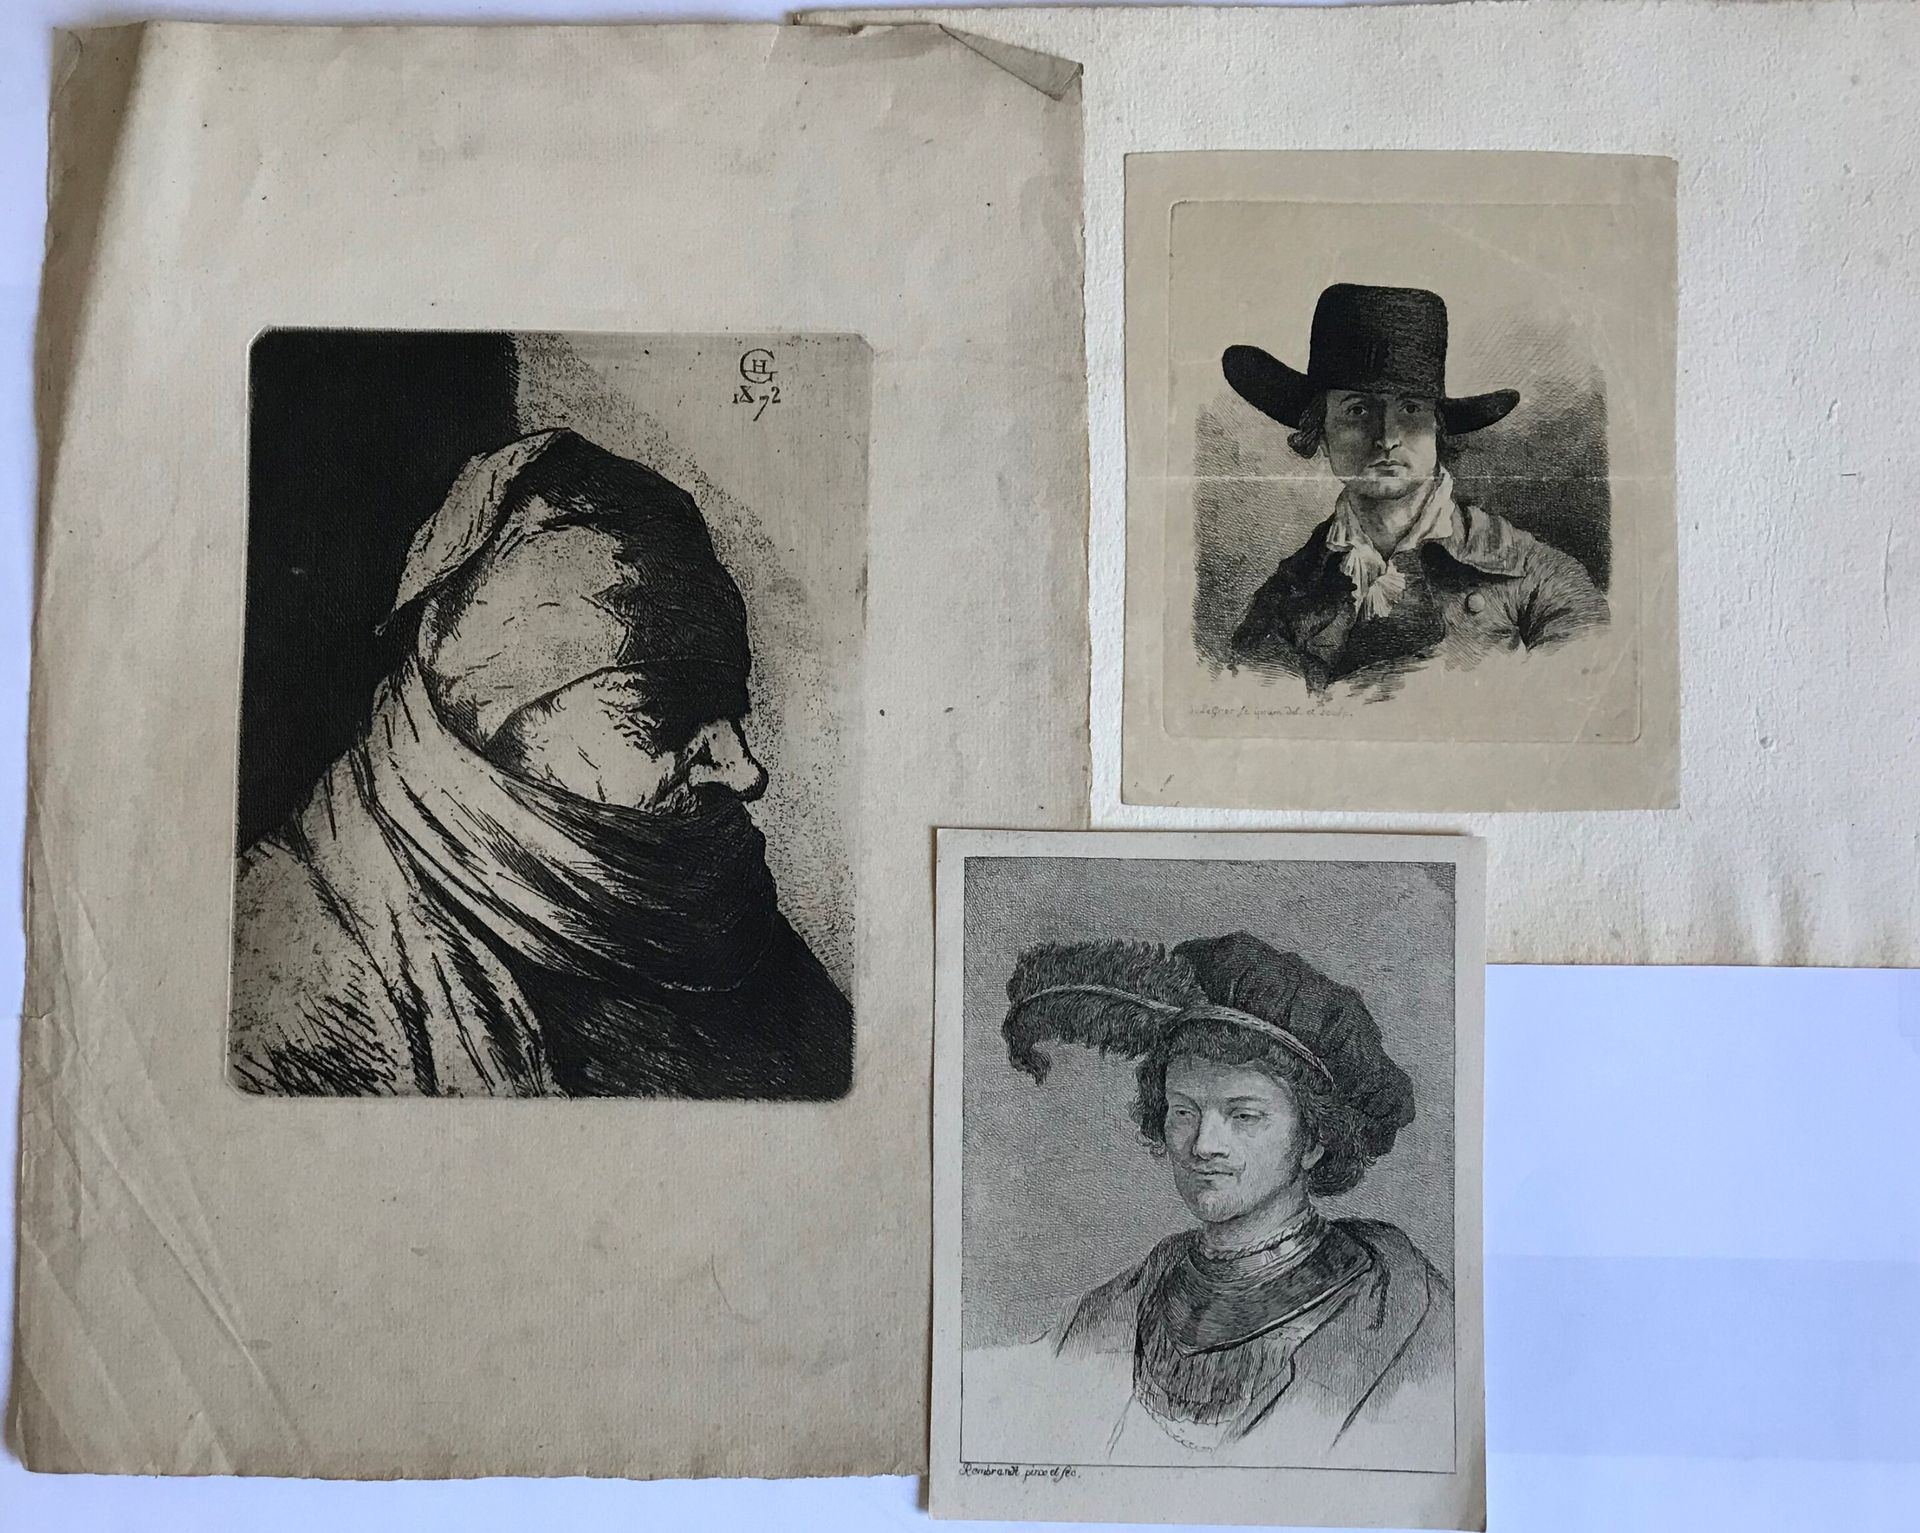 Rembrandt 在REMBRANDT、LE GROS等人之后

肖像画

三幅单张版画

30 x 23至14 x 11.5厘米

如是